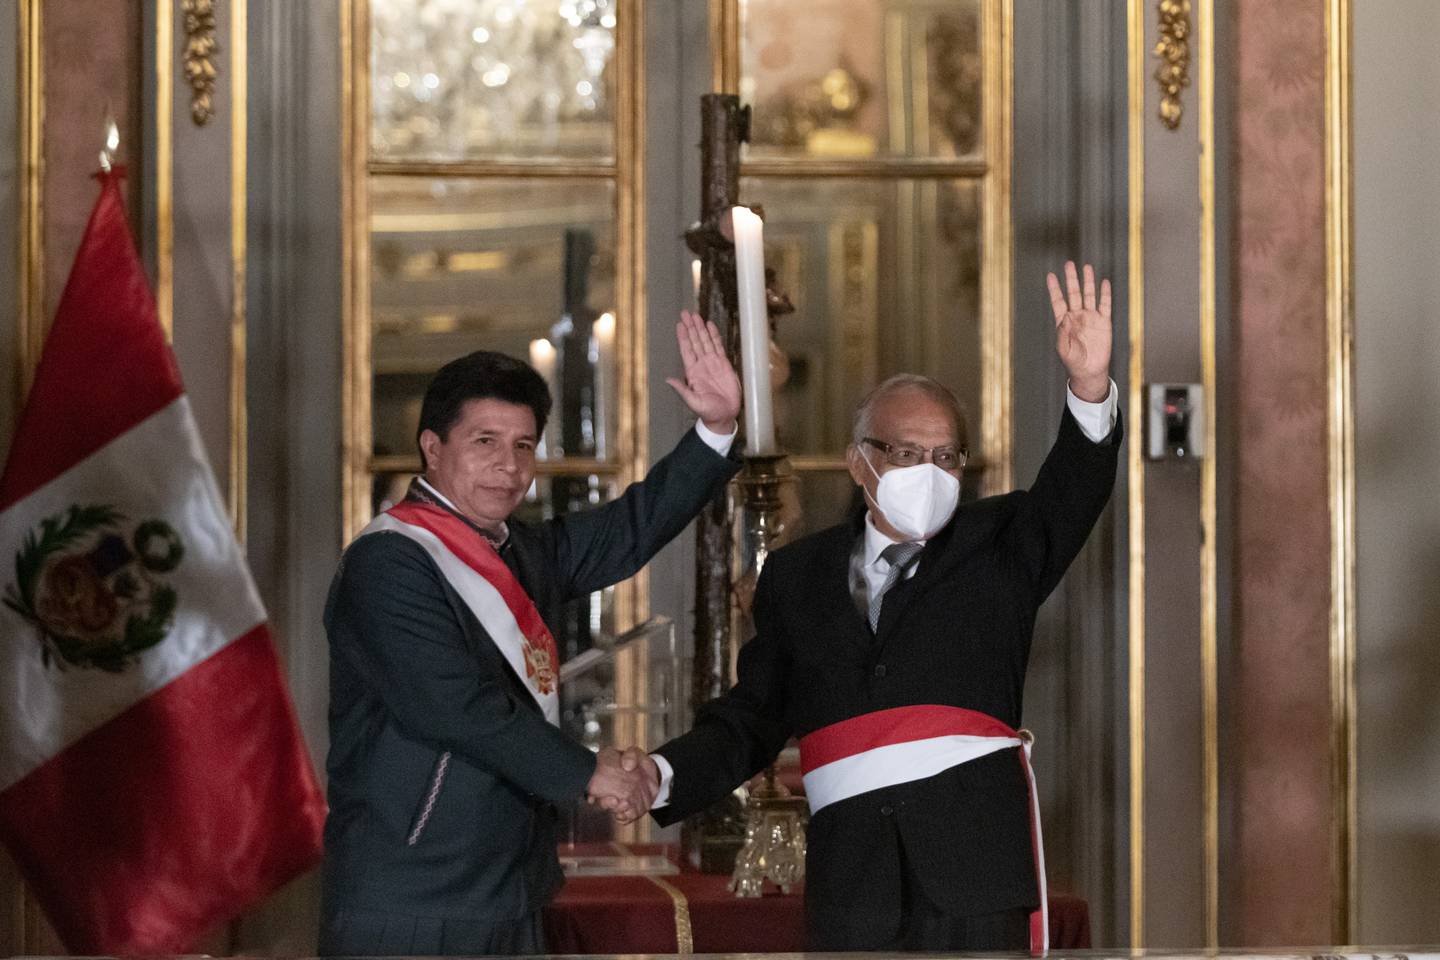 El presidente Castillo le da la mano a Aníbal Torres durante la ceremonia de juramentación en el Palacio de Gobierno en Lima, Perú, el 8 de febrero.Fotógrafo: Ángela Ponce/Bloomberg